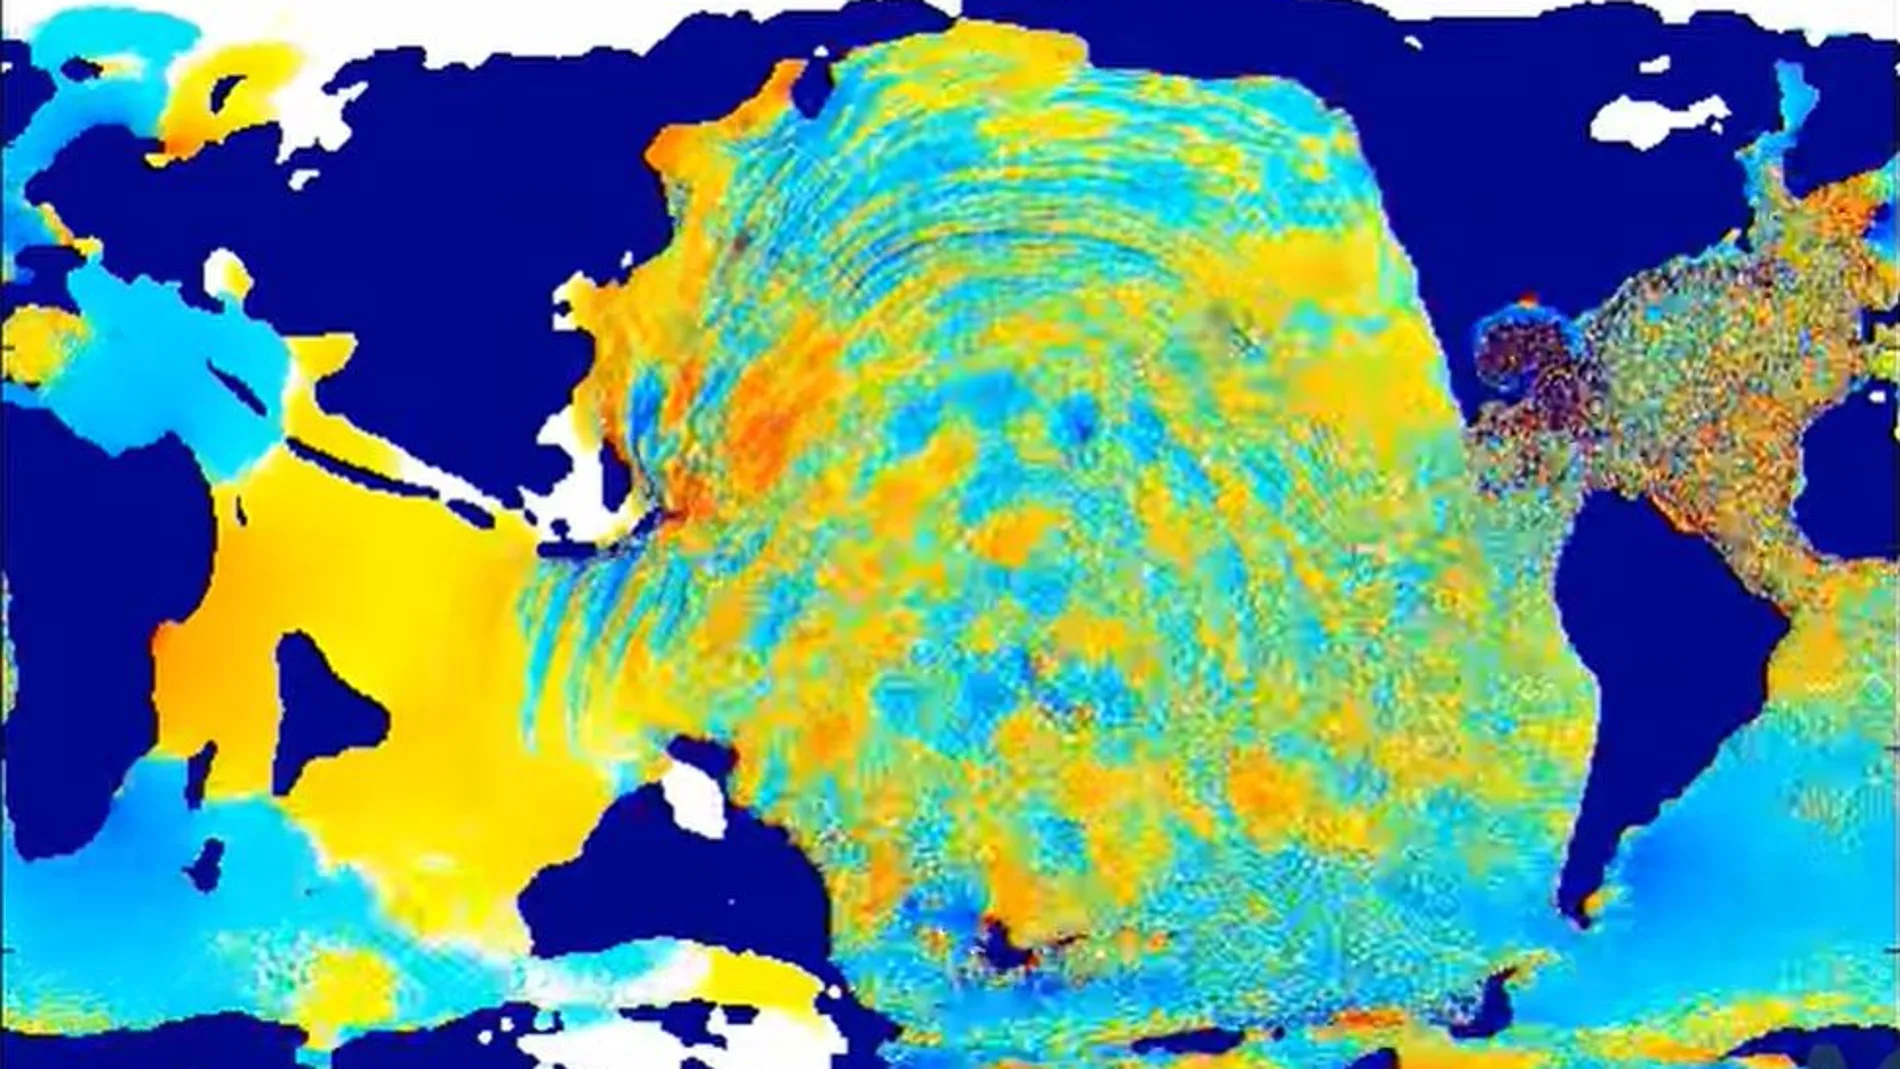 Las alturas de las olas en mar abierto en el Golfo de México habrían superado los 300 metros